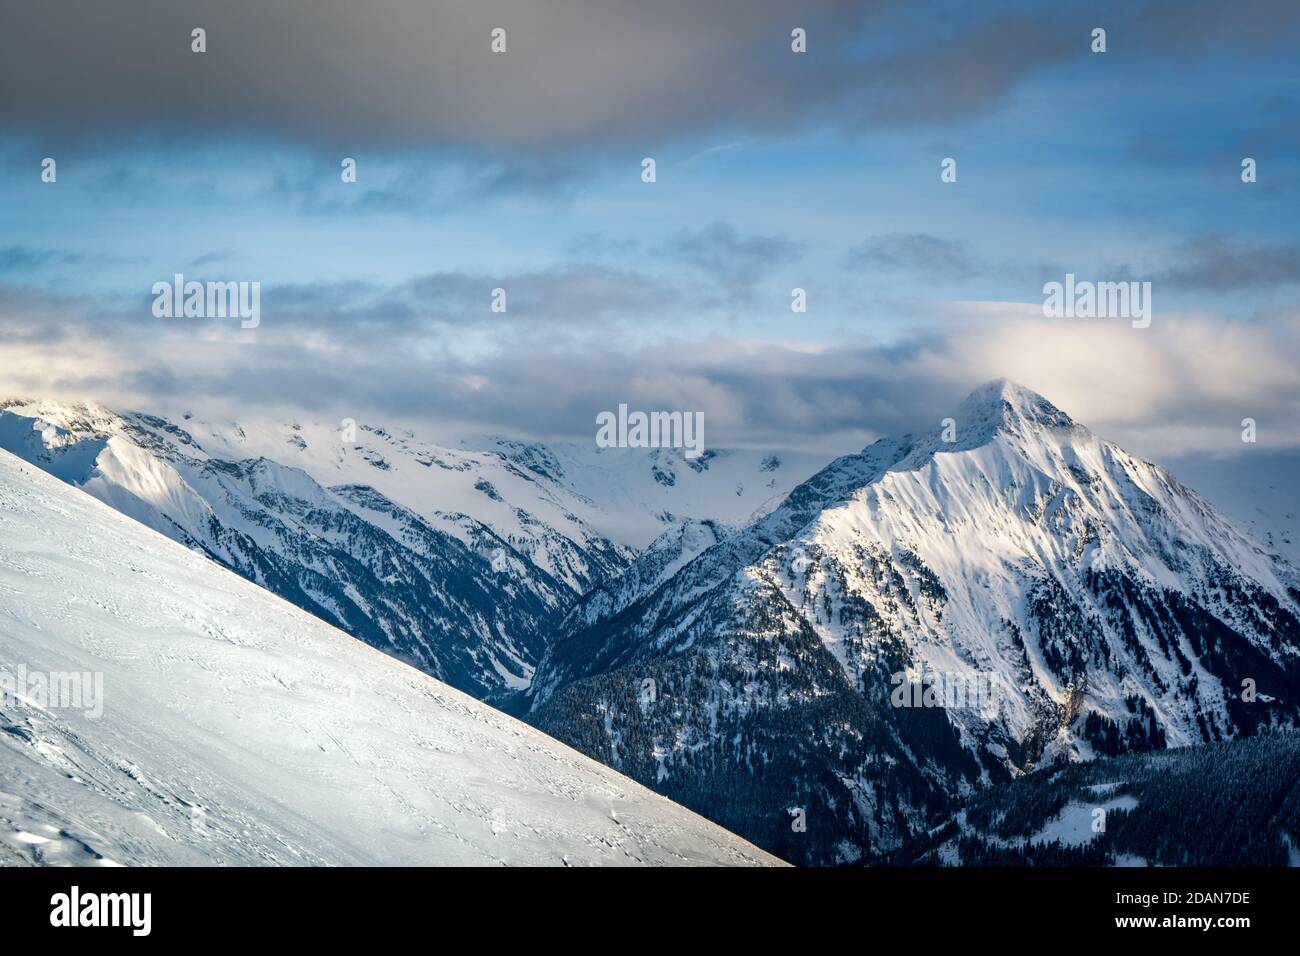 pista de esquí en las montañas nevadas Foto de stock